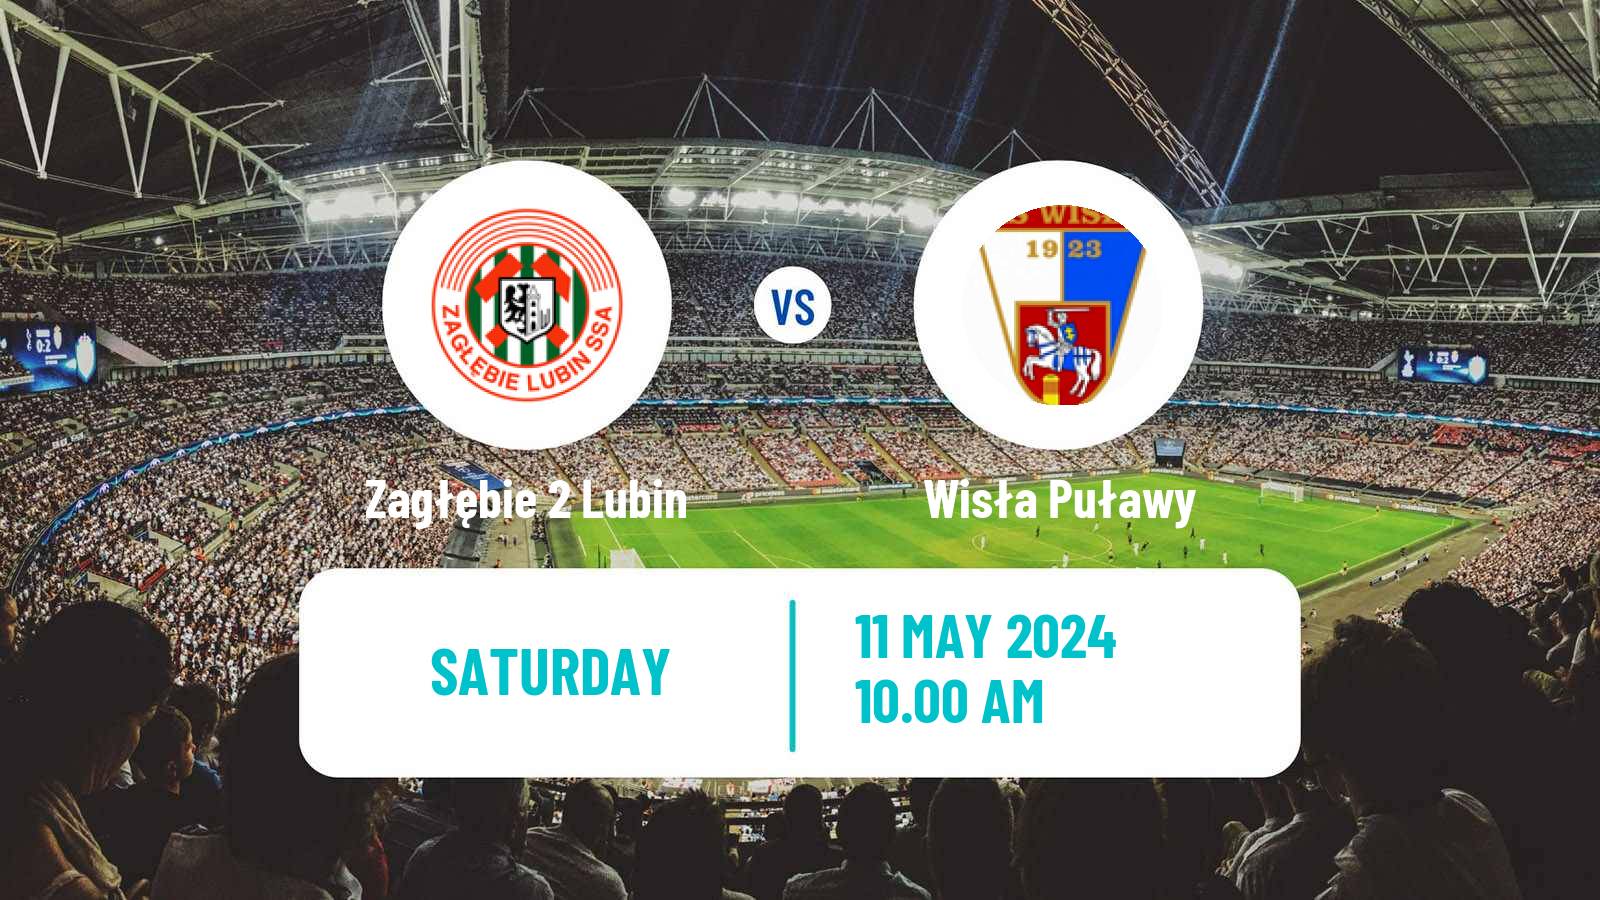 Soccer Polish Division 2 Zagłębie 2 Lubin - Wisła Puławy